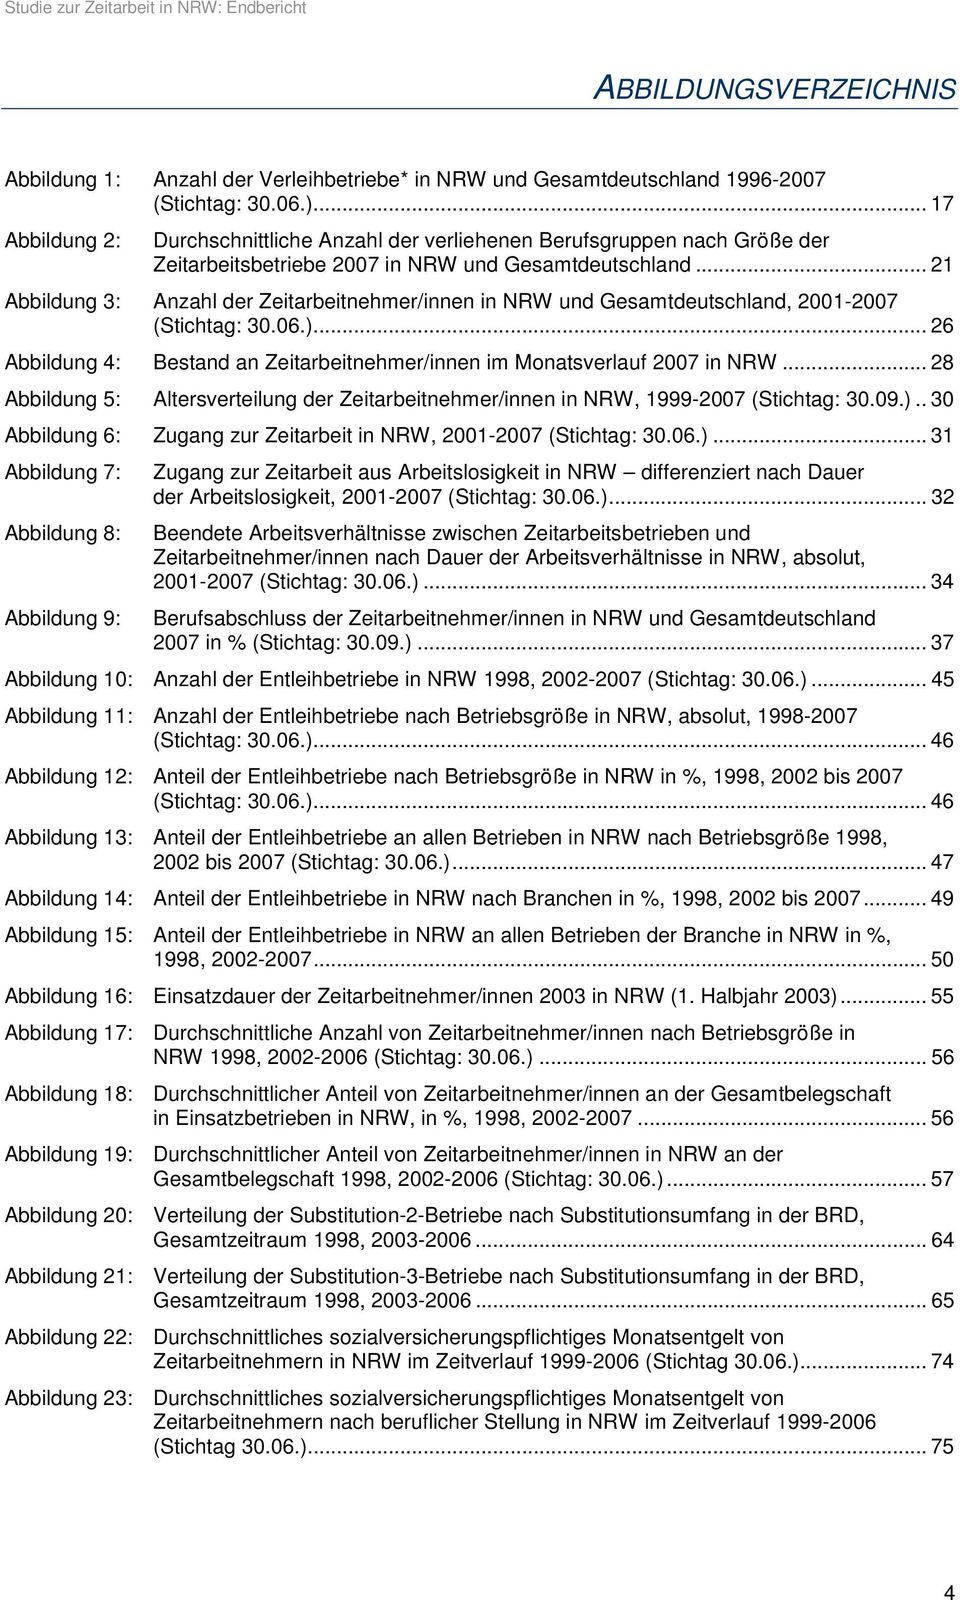 .. 21 Abbildung 3: Anzahl der Zeitarbeitnehmer/innen in NRW und Gesamtdeutschland, 2001-2007 (Stichtag: 30.06.)... 26 Abbildung 4: Bestand an Zeitarbeitnehmer/innen im Monatsverlauf 2007 in NRW.